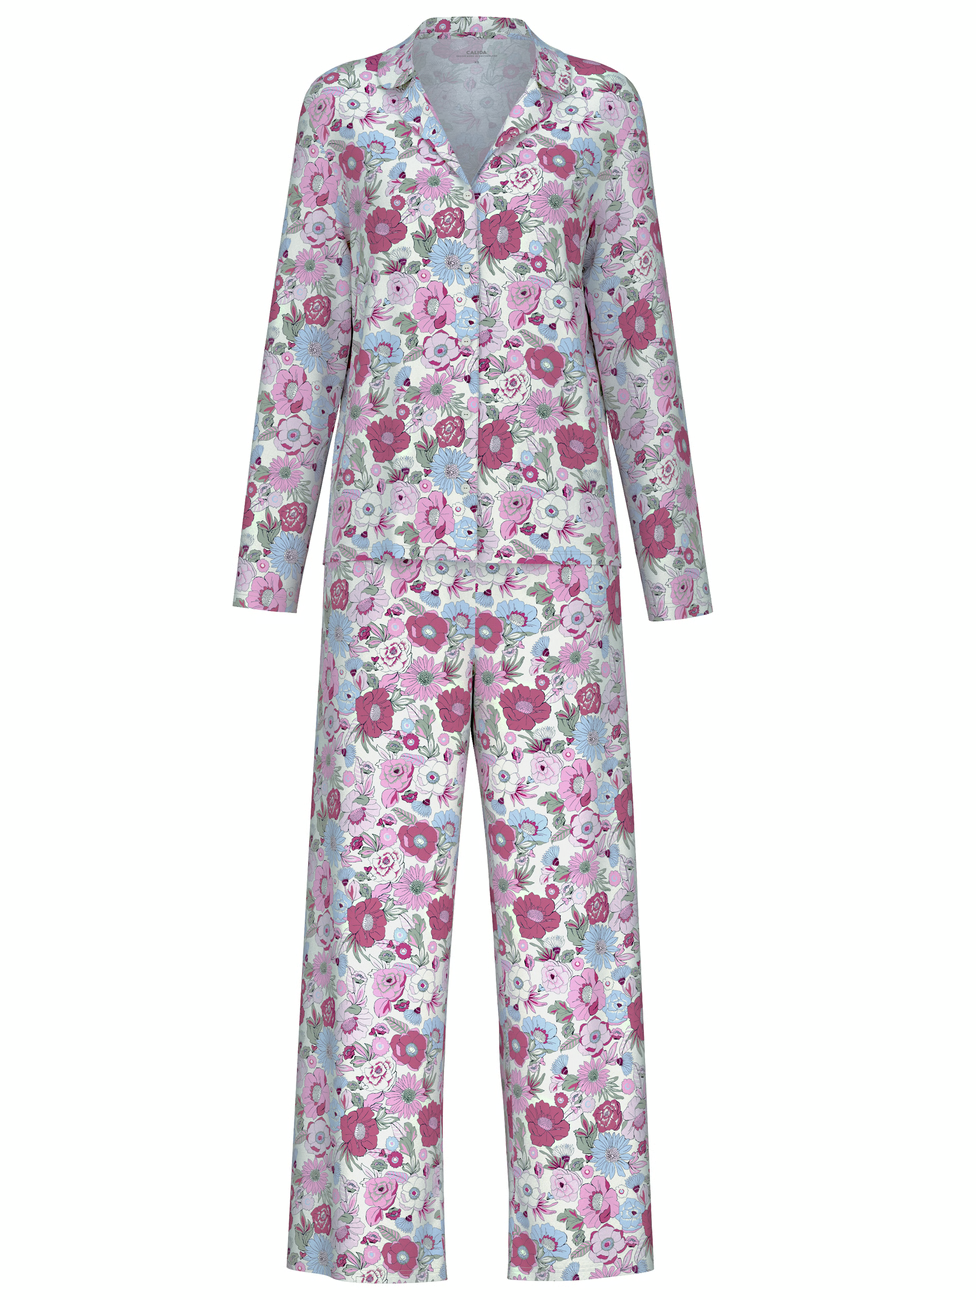 CALIDA
SPRING FLOWER DREAMS
Pyjama buttoned